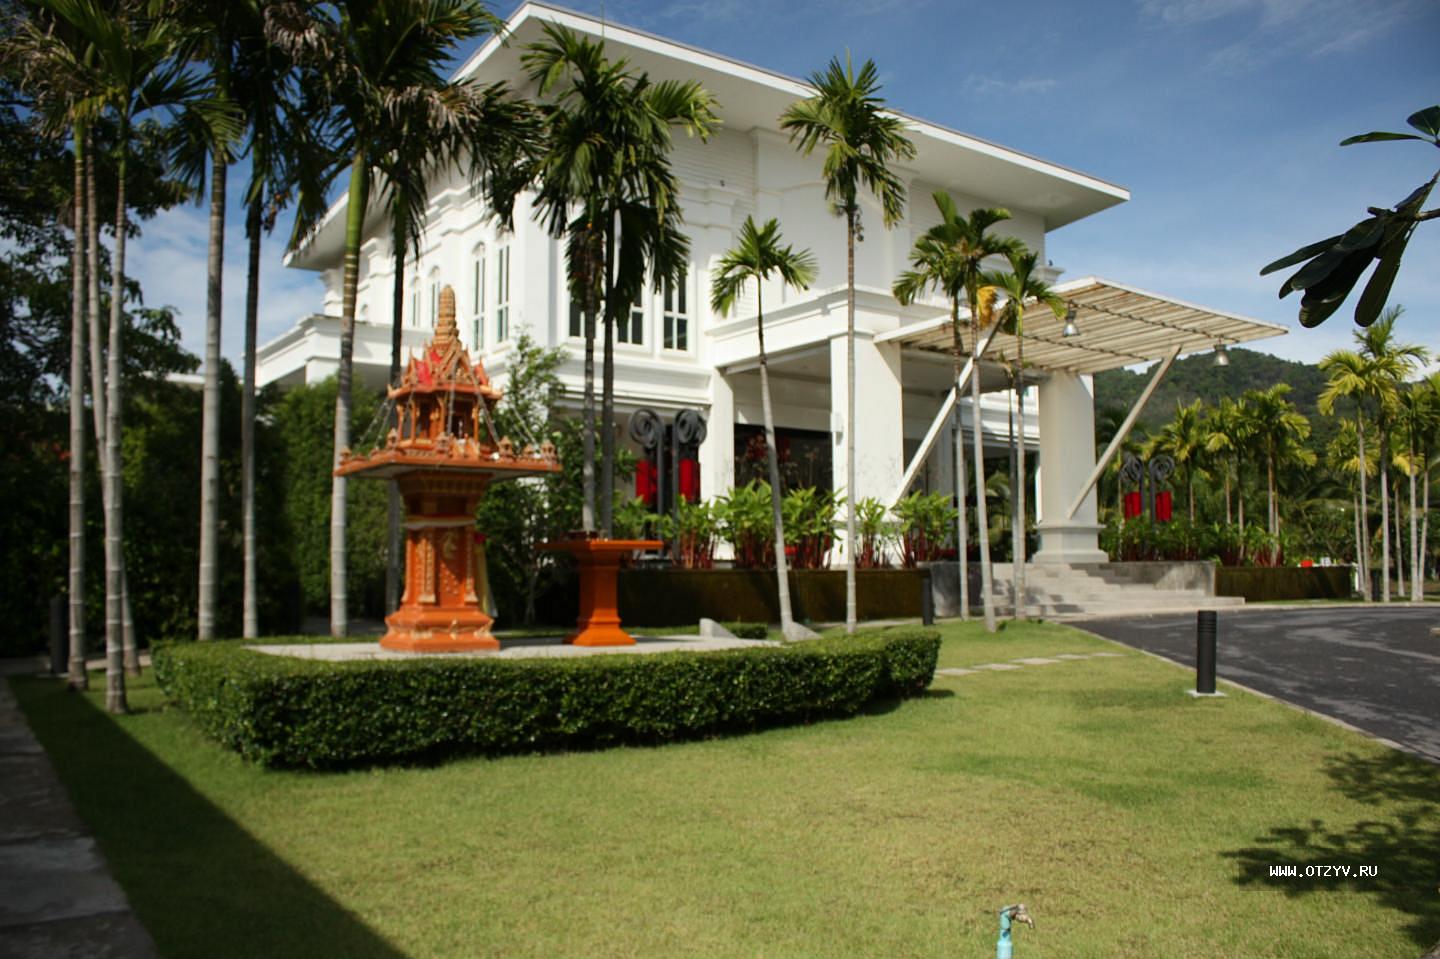 The Old Phuket